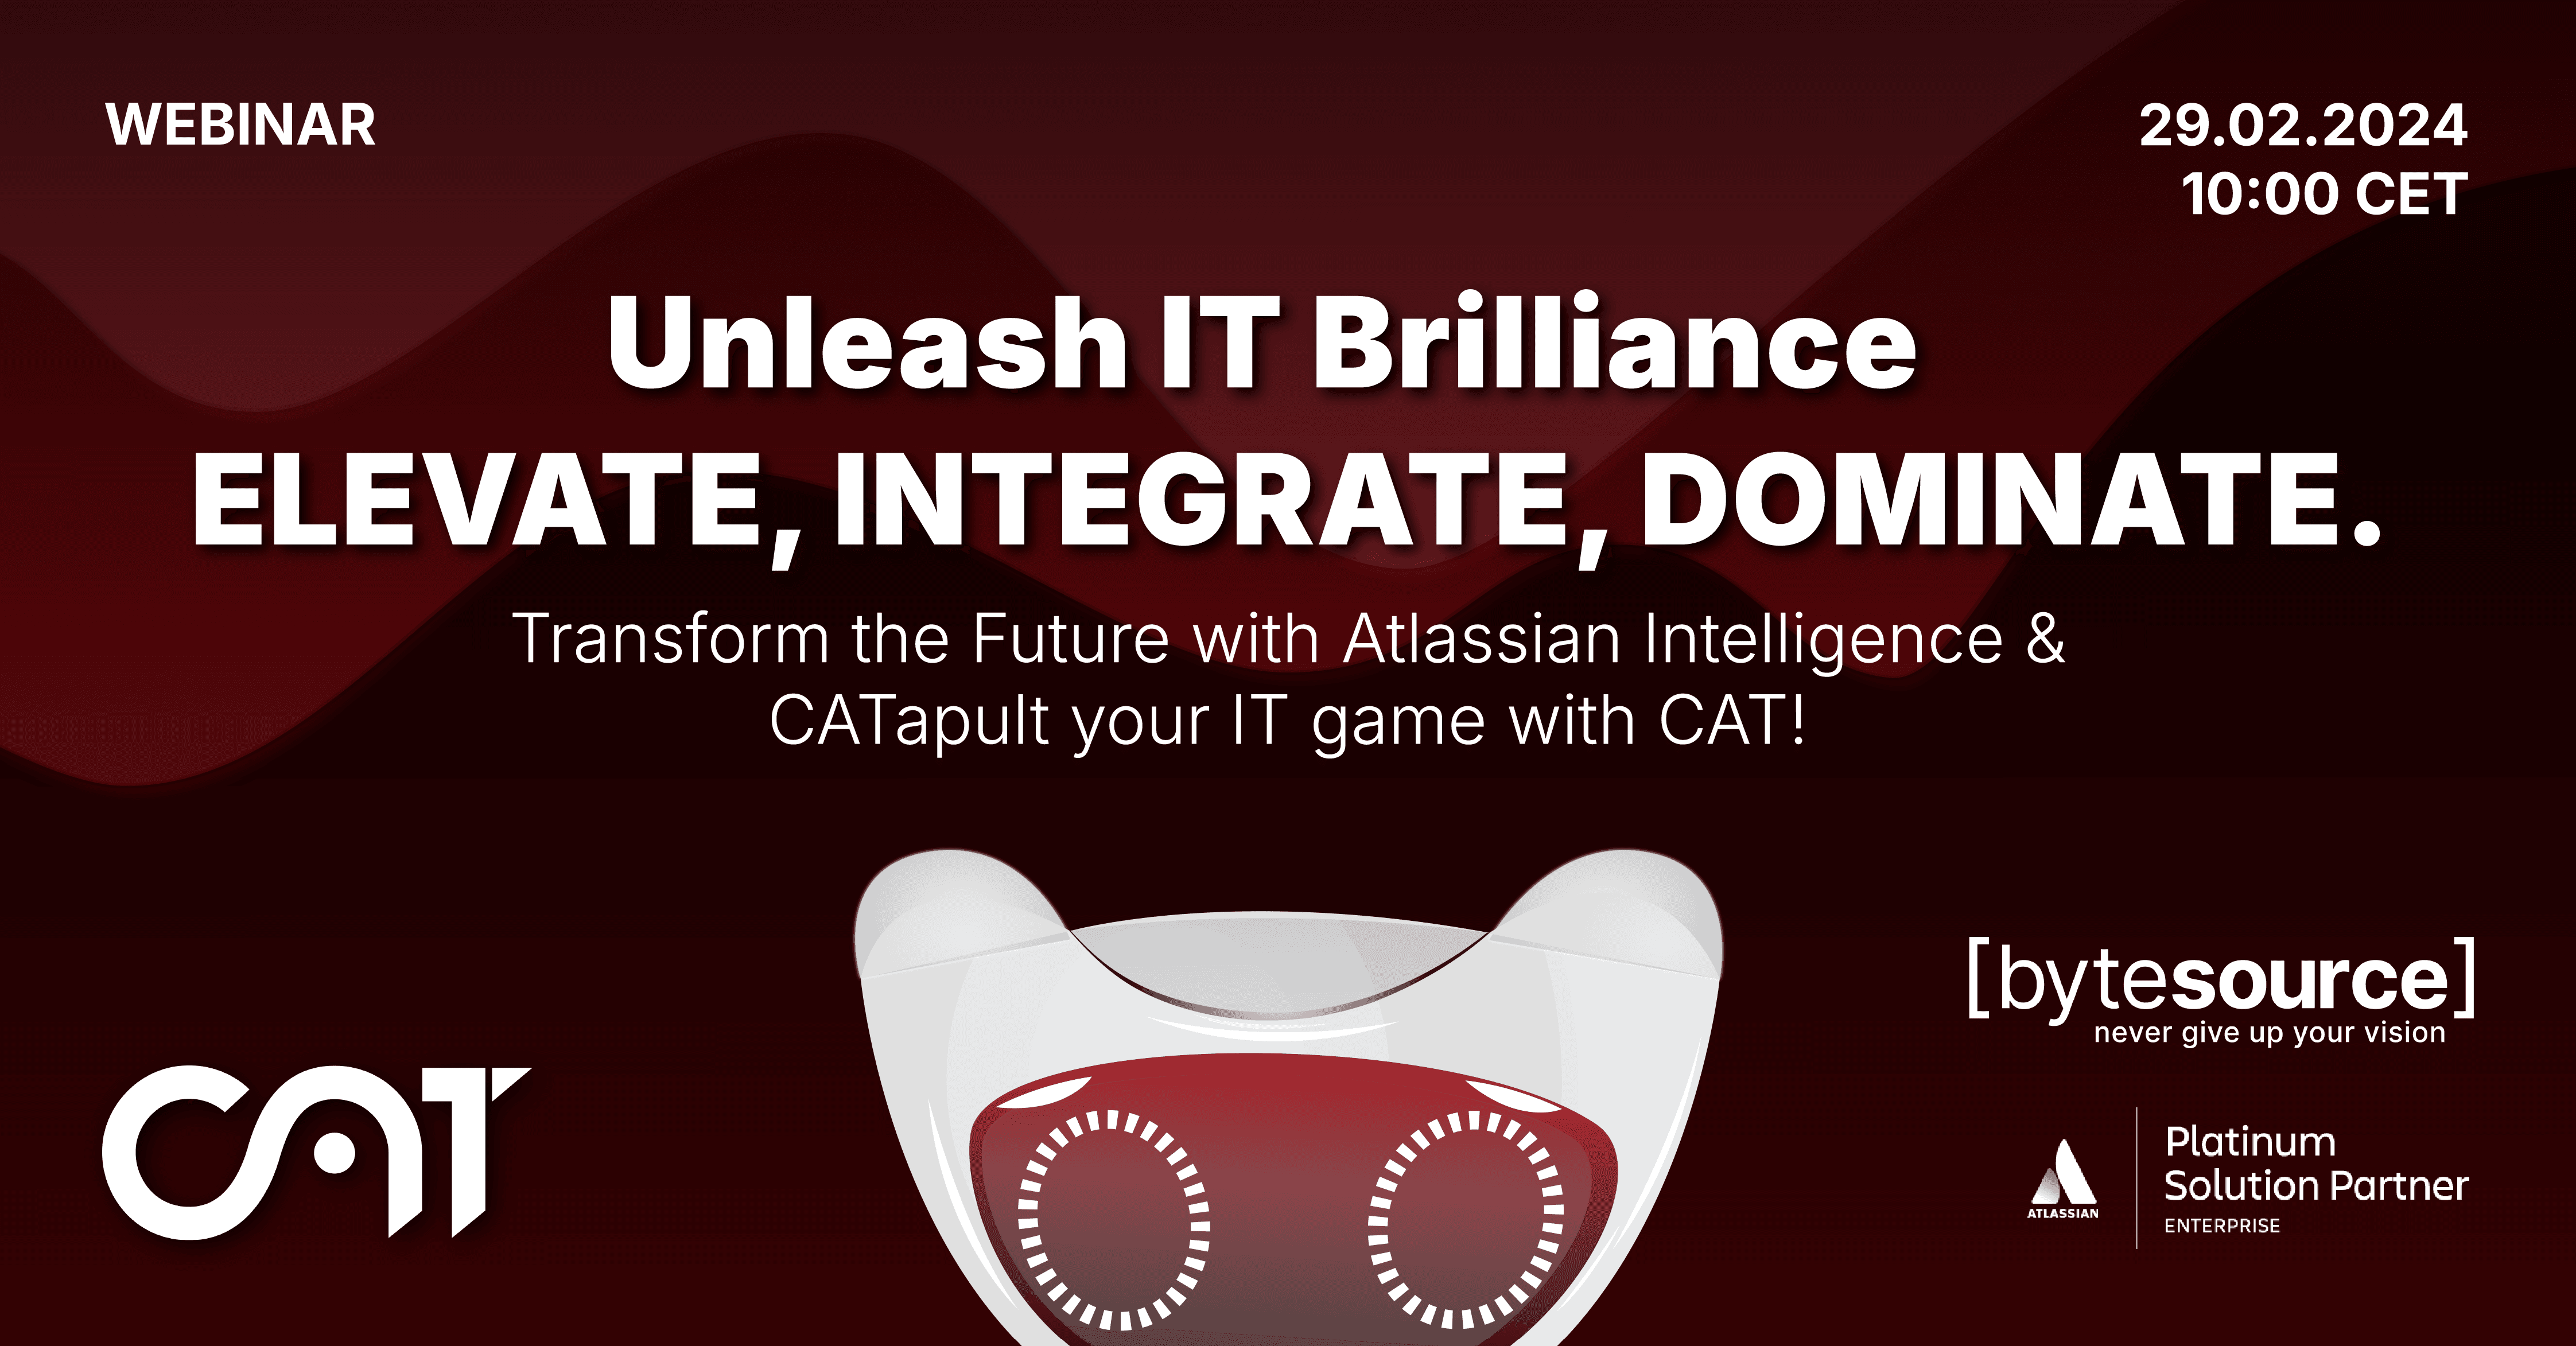 Webinar: Unleash IT Brilliance with Atlassian Intelligence & CAT!